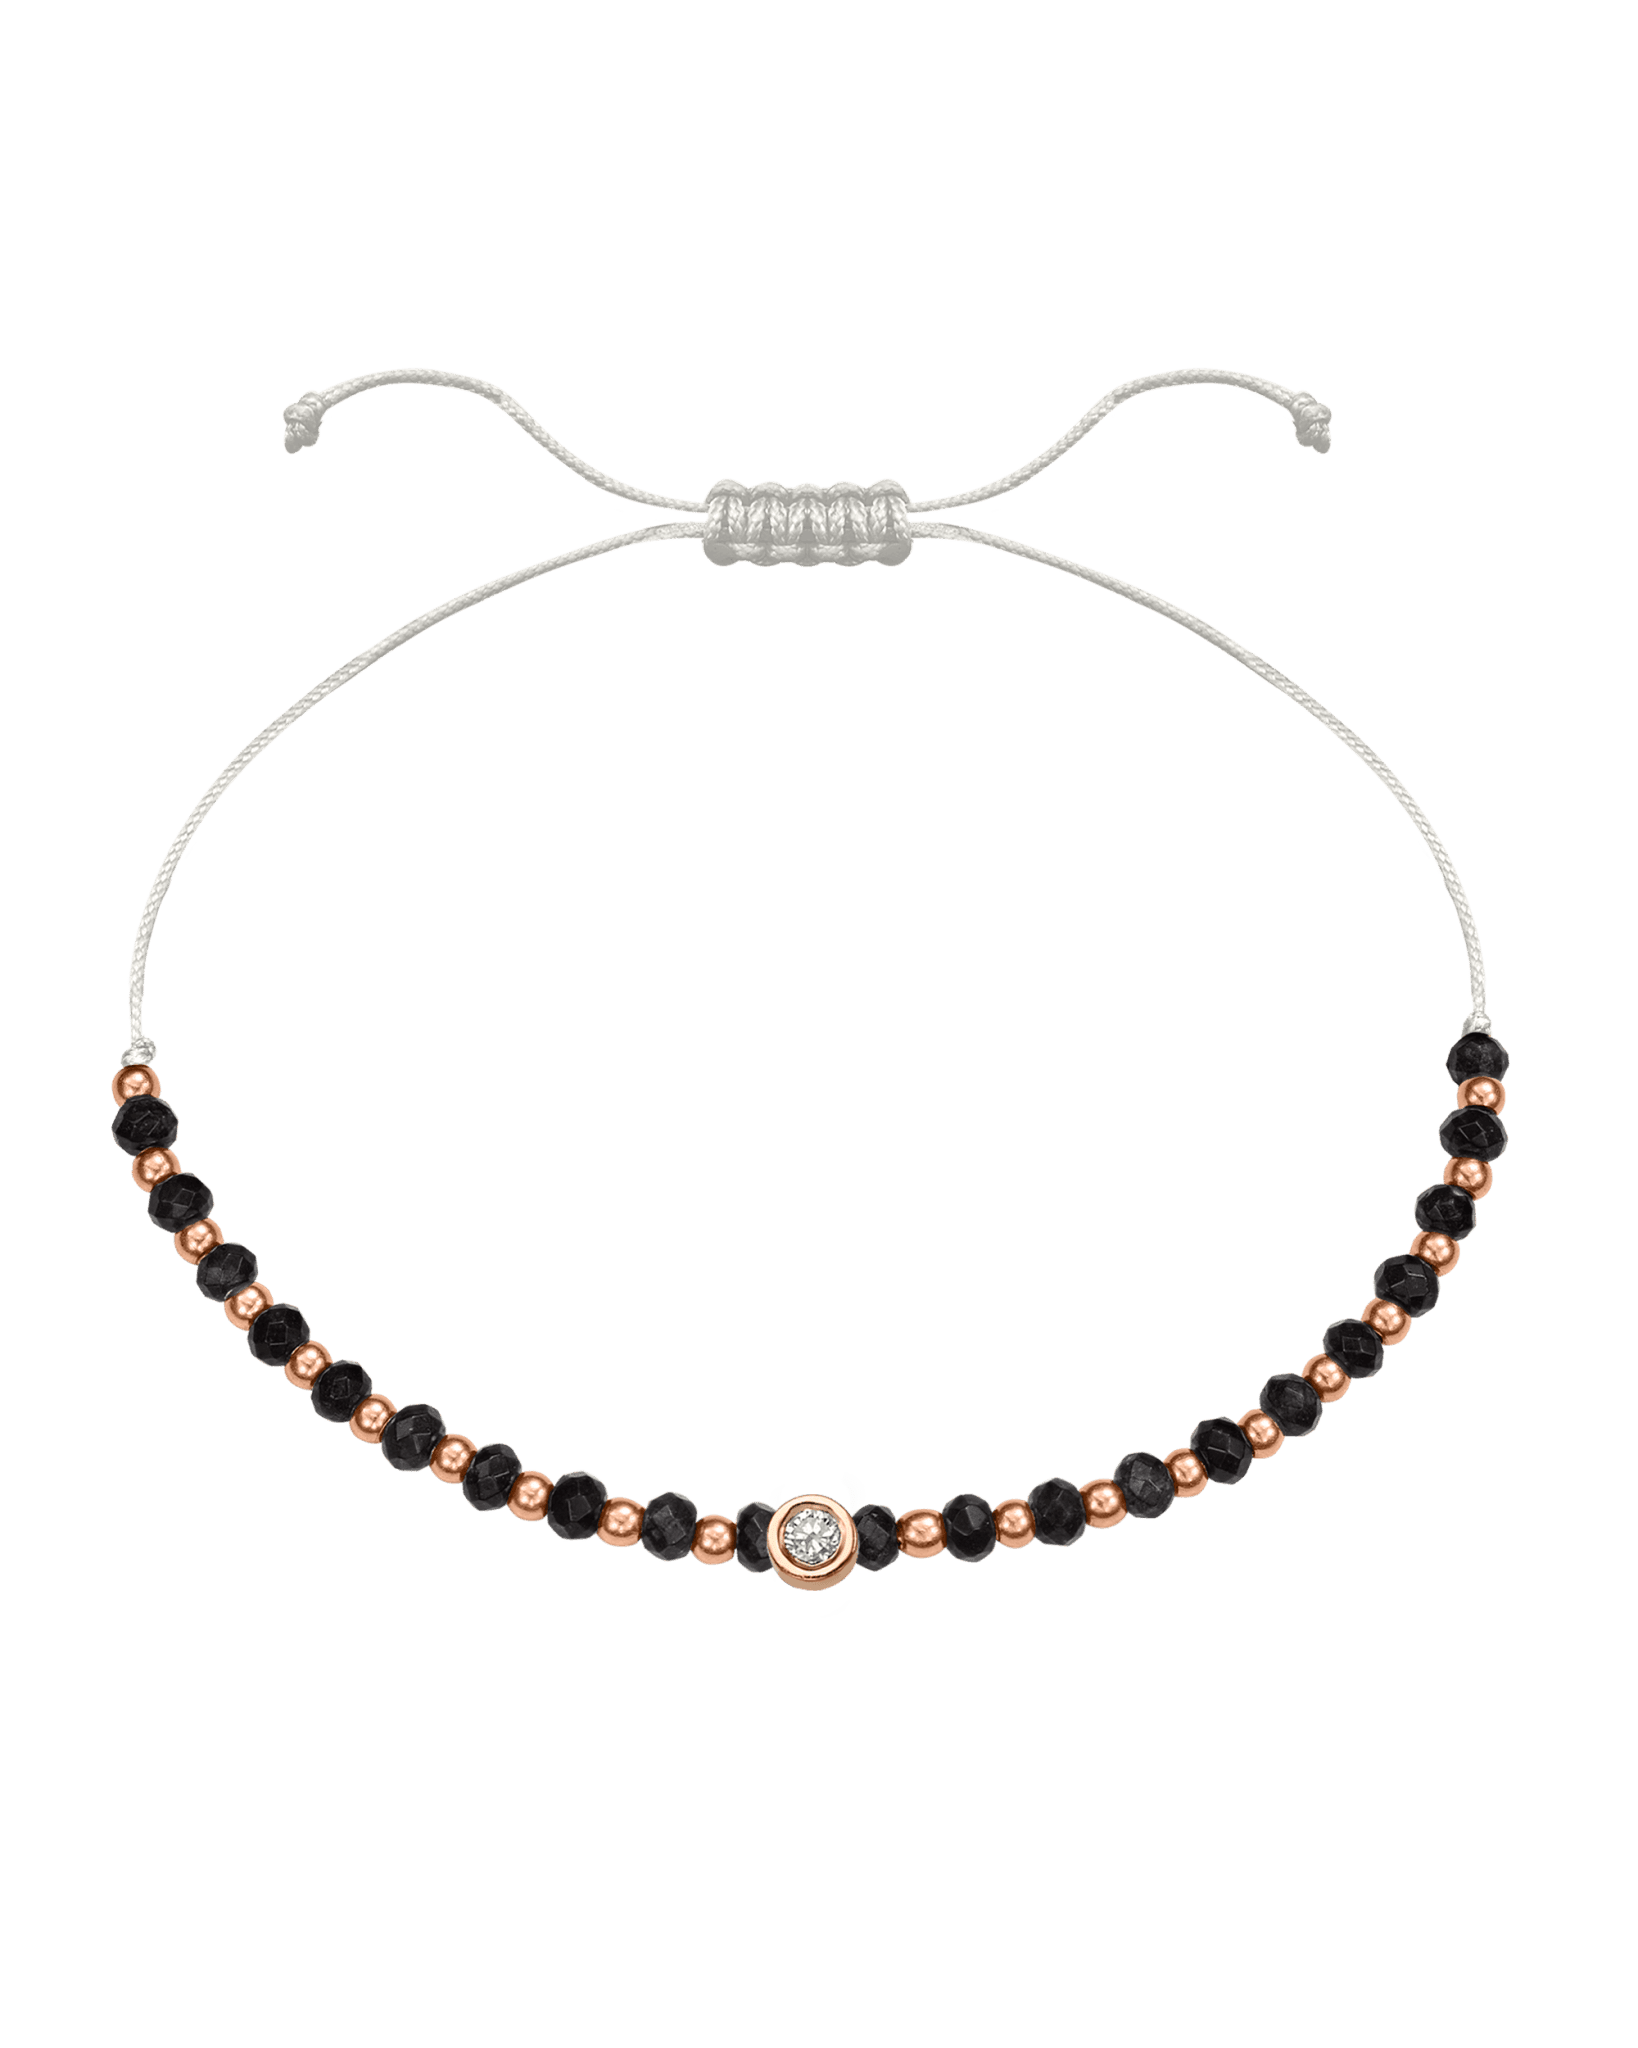 Black Onyx Gemstone String of Love Bracelet for Protection - 14K Rose Gold Bracelets 14K Solid Gold Pearl Medium: 0.04ct 